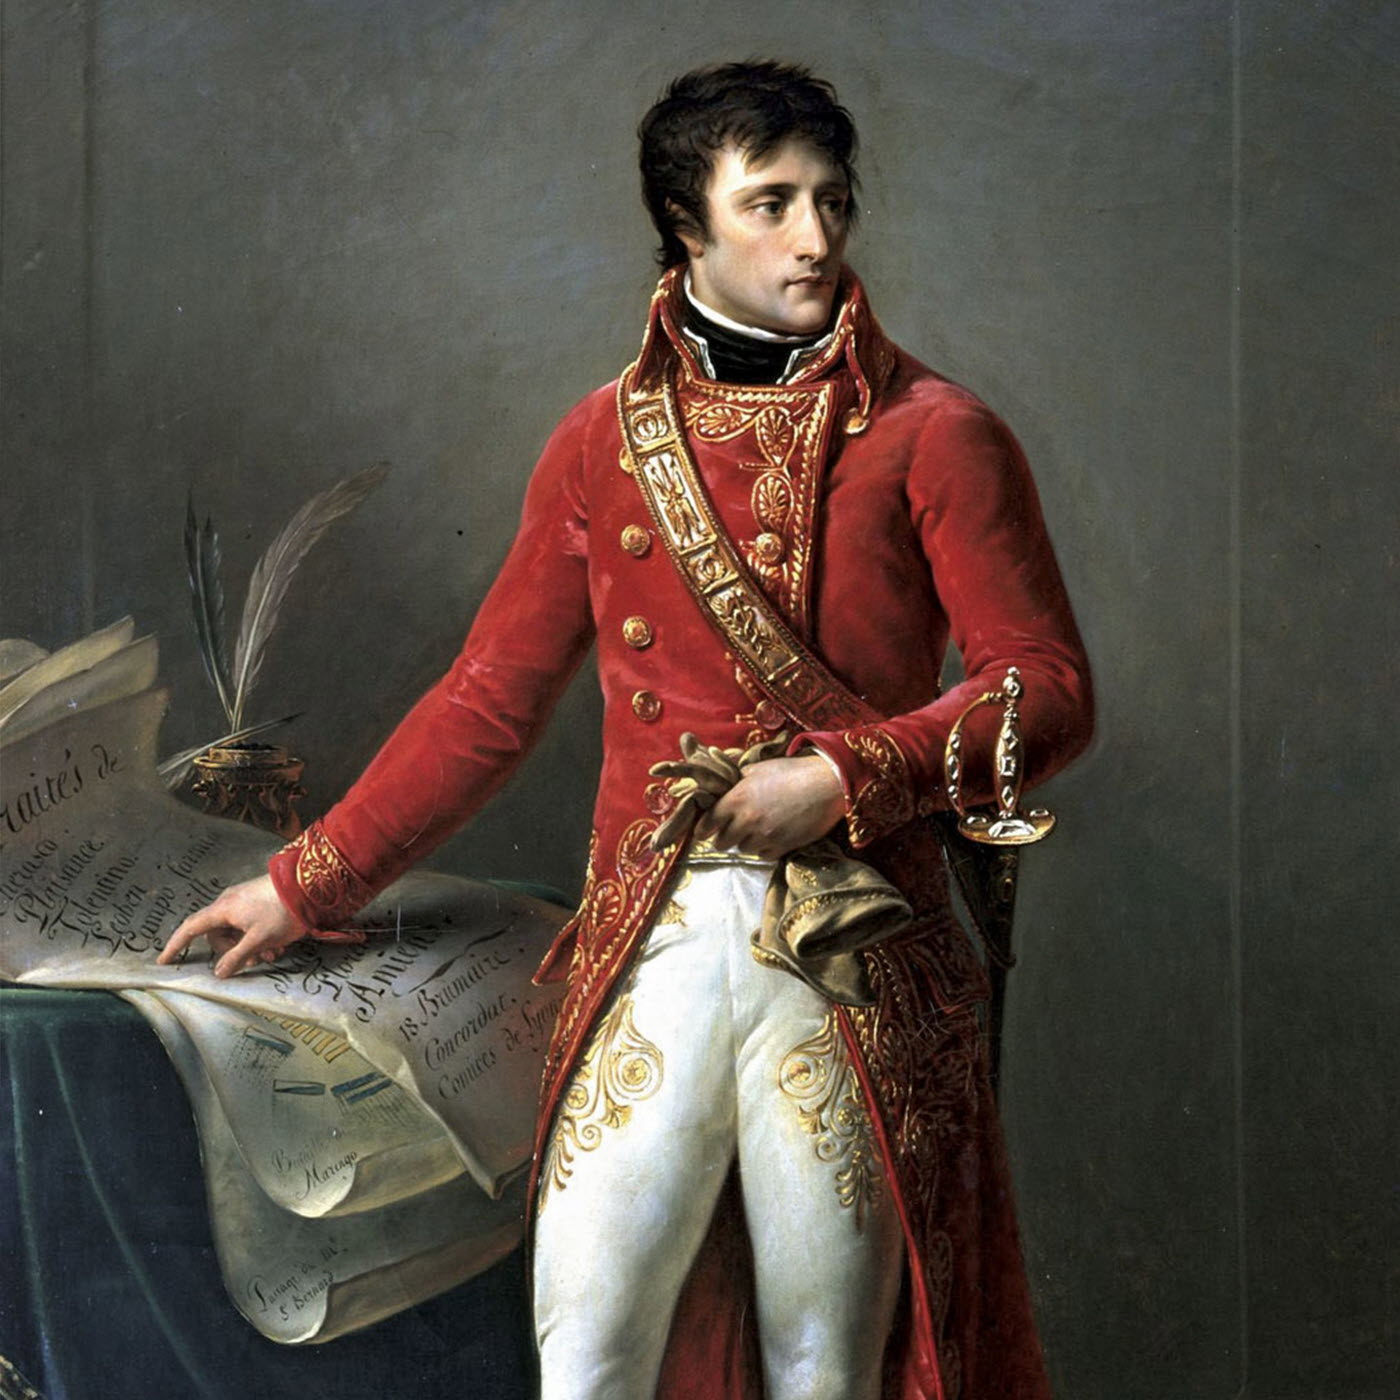 1er AVRIL 1803: BONAPARTE ENCADRE LES PRÉNOMS